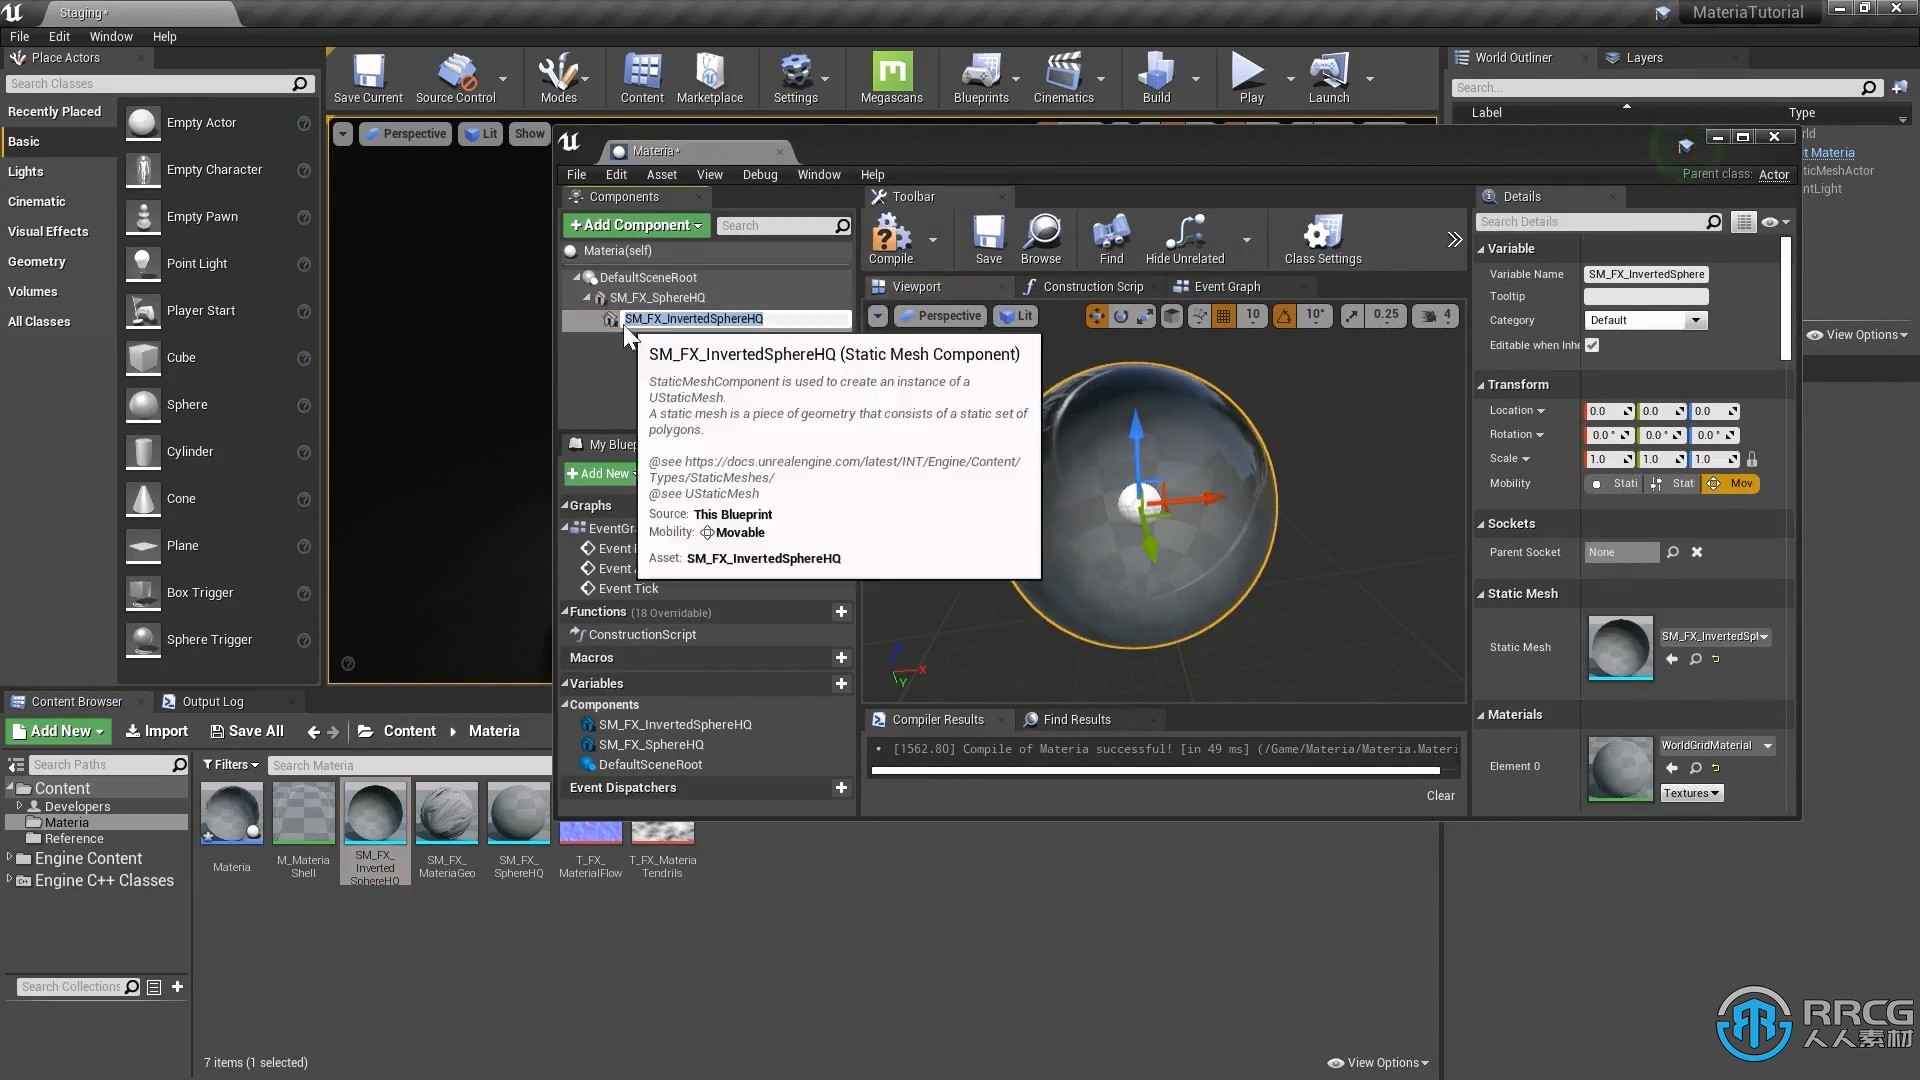 UE4虚幻引擎高级视觉特效技术训练视频教程